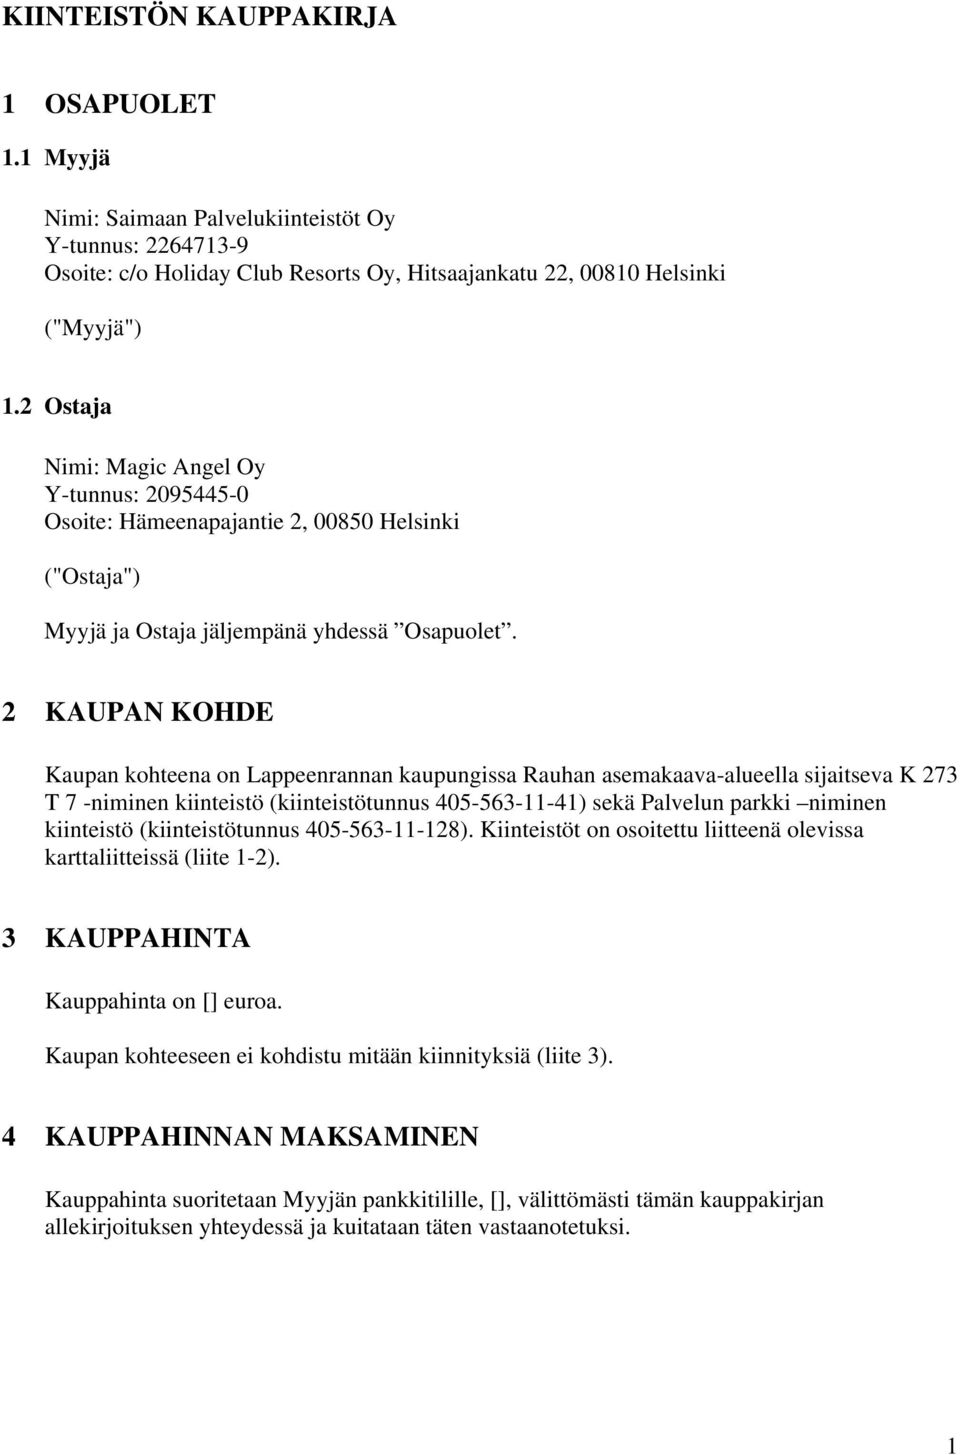 2 KAUPAN KOHDE Kaupan kohteena on Lappeenrannan kaupungissa Rauhan asemakaava-alueella sijaitseva K 273 T 7 -niminen kiinteistö (kiinteistötunnus 405-563-11-41) sekä Palvelun parkki niminen